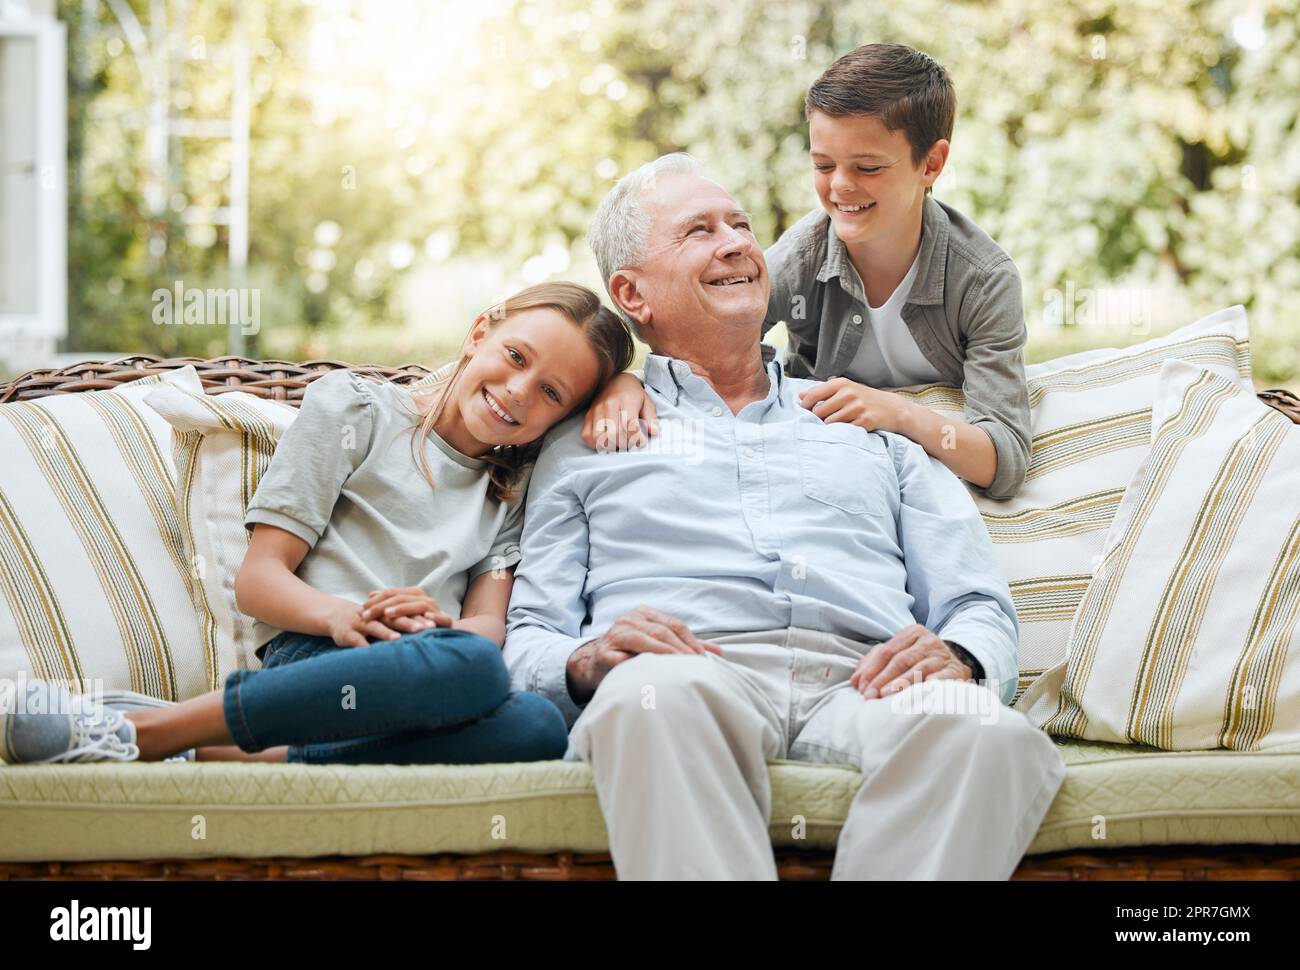 Meine Enkel meinen mir die Welt. Aufnahme eines älteren Mannes, der mit seinen beiden Enkeln draußen sitzt. Stockfoto